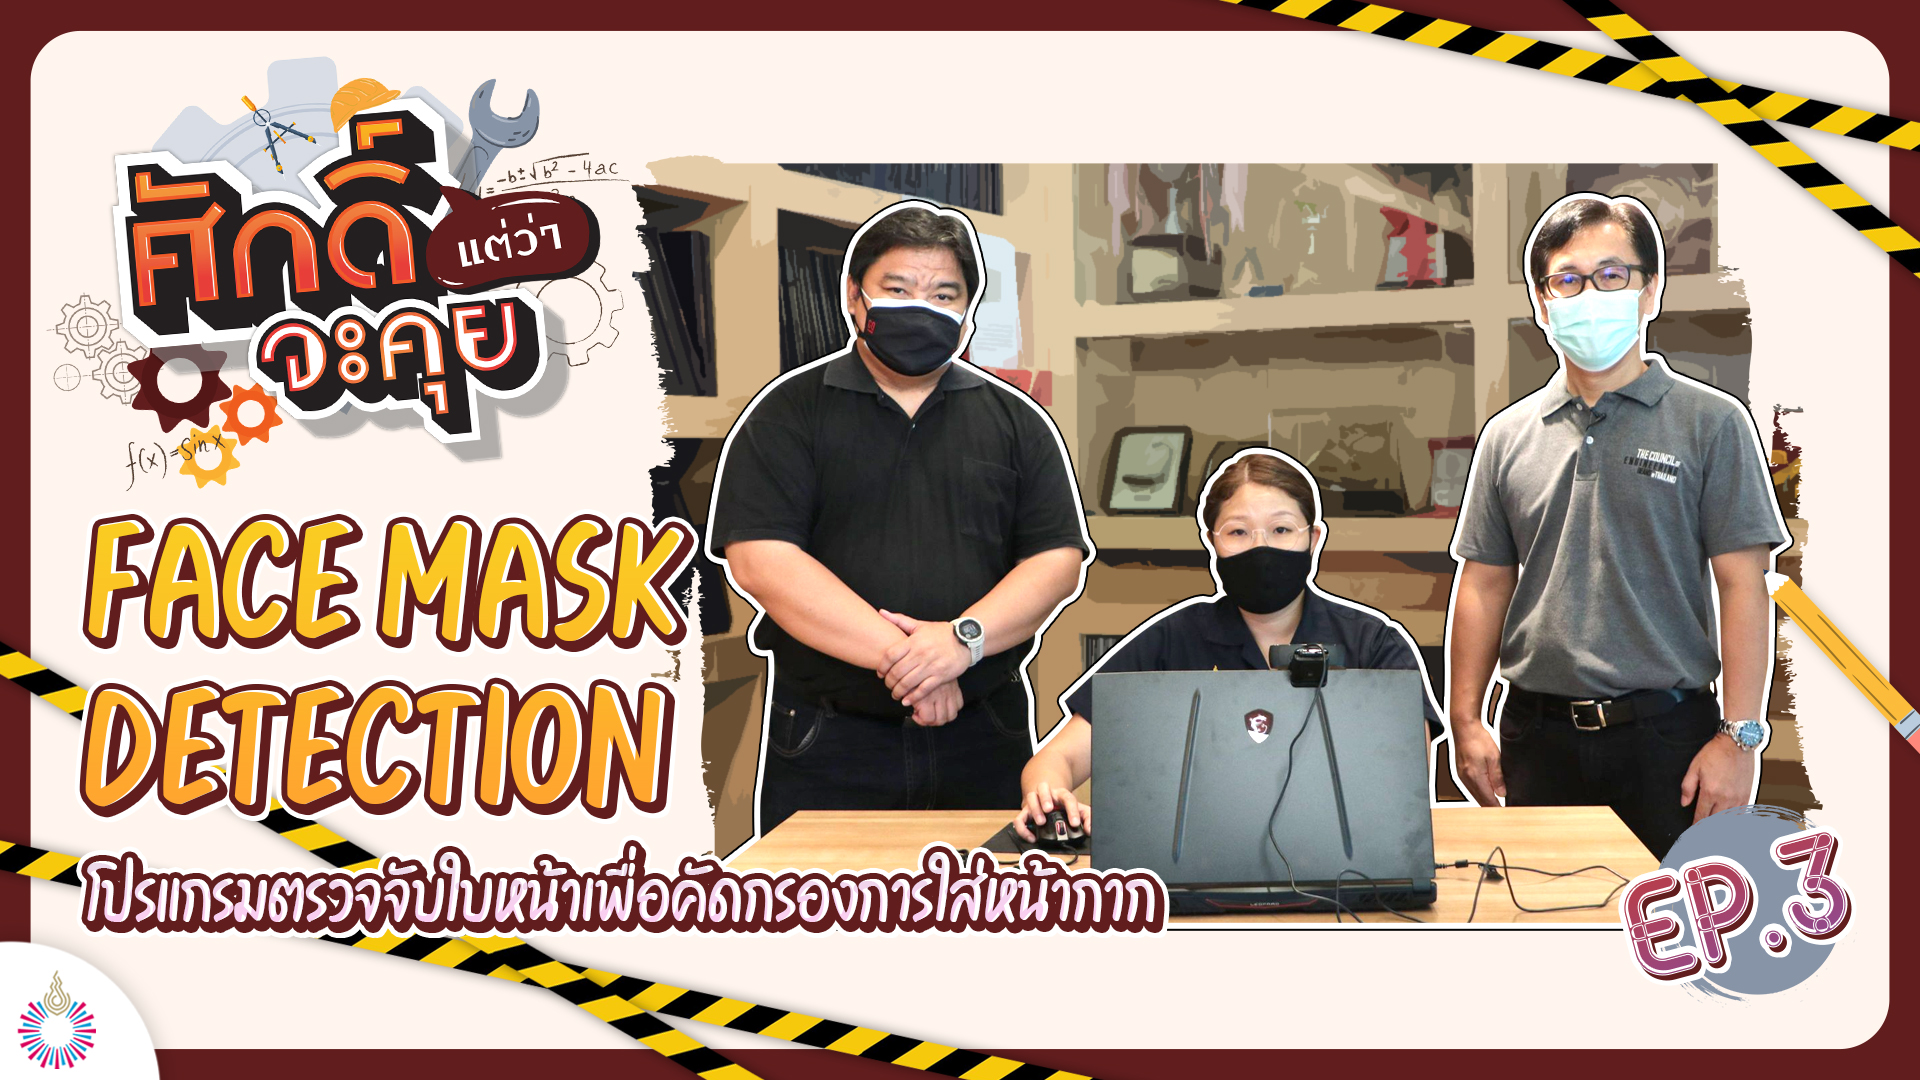 ศักดิ์แต่ว่าจะคุย!! EP.03 | “Face Mask Detection” ตรวจจับใบหน้าการใส่หน้ากาก วิศวกรรมคอมพิวเตอร์